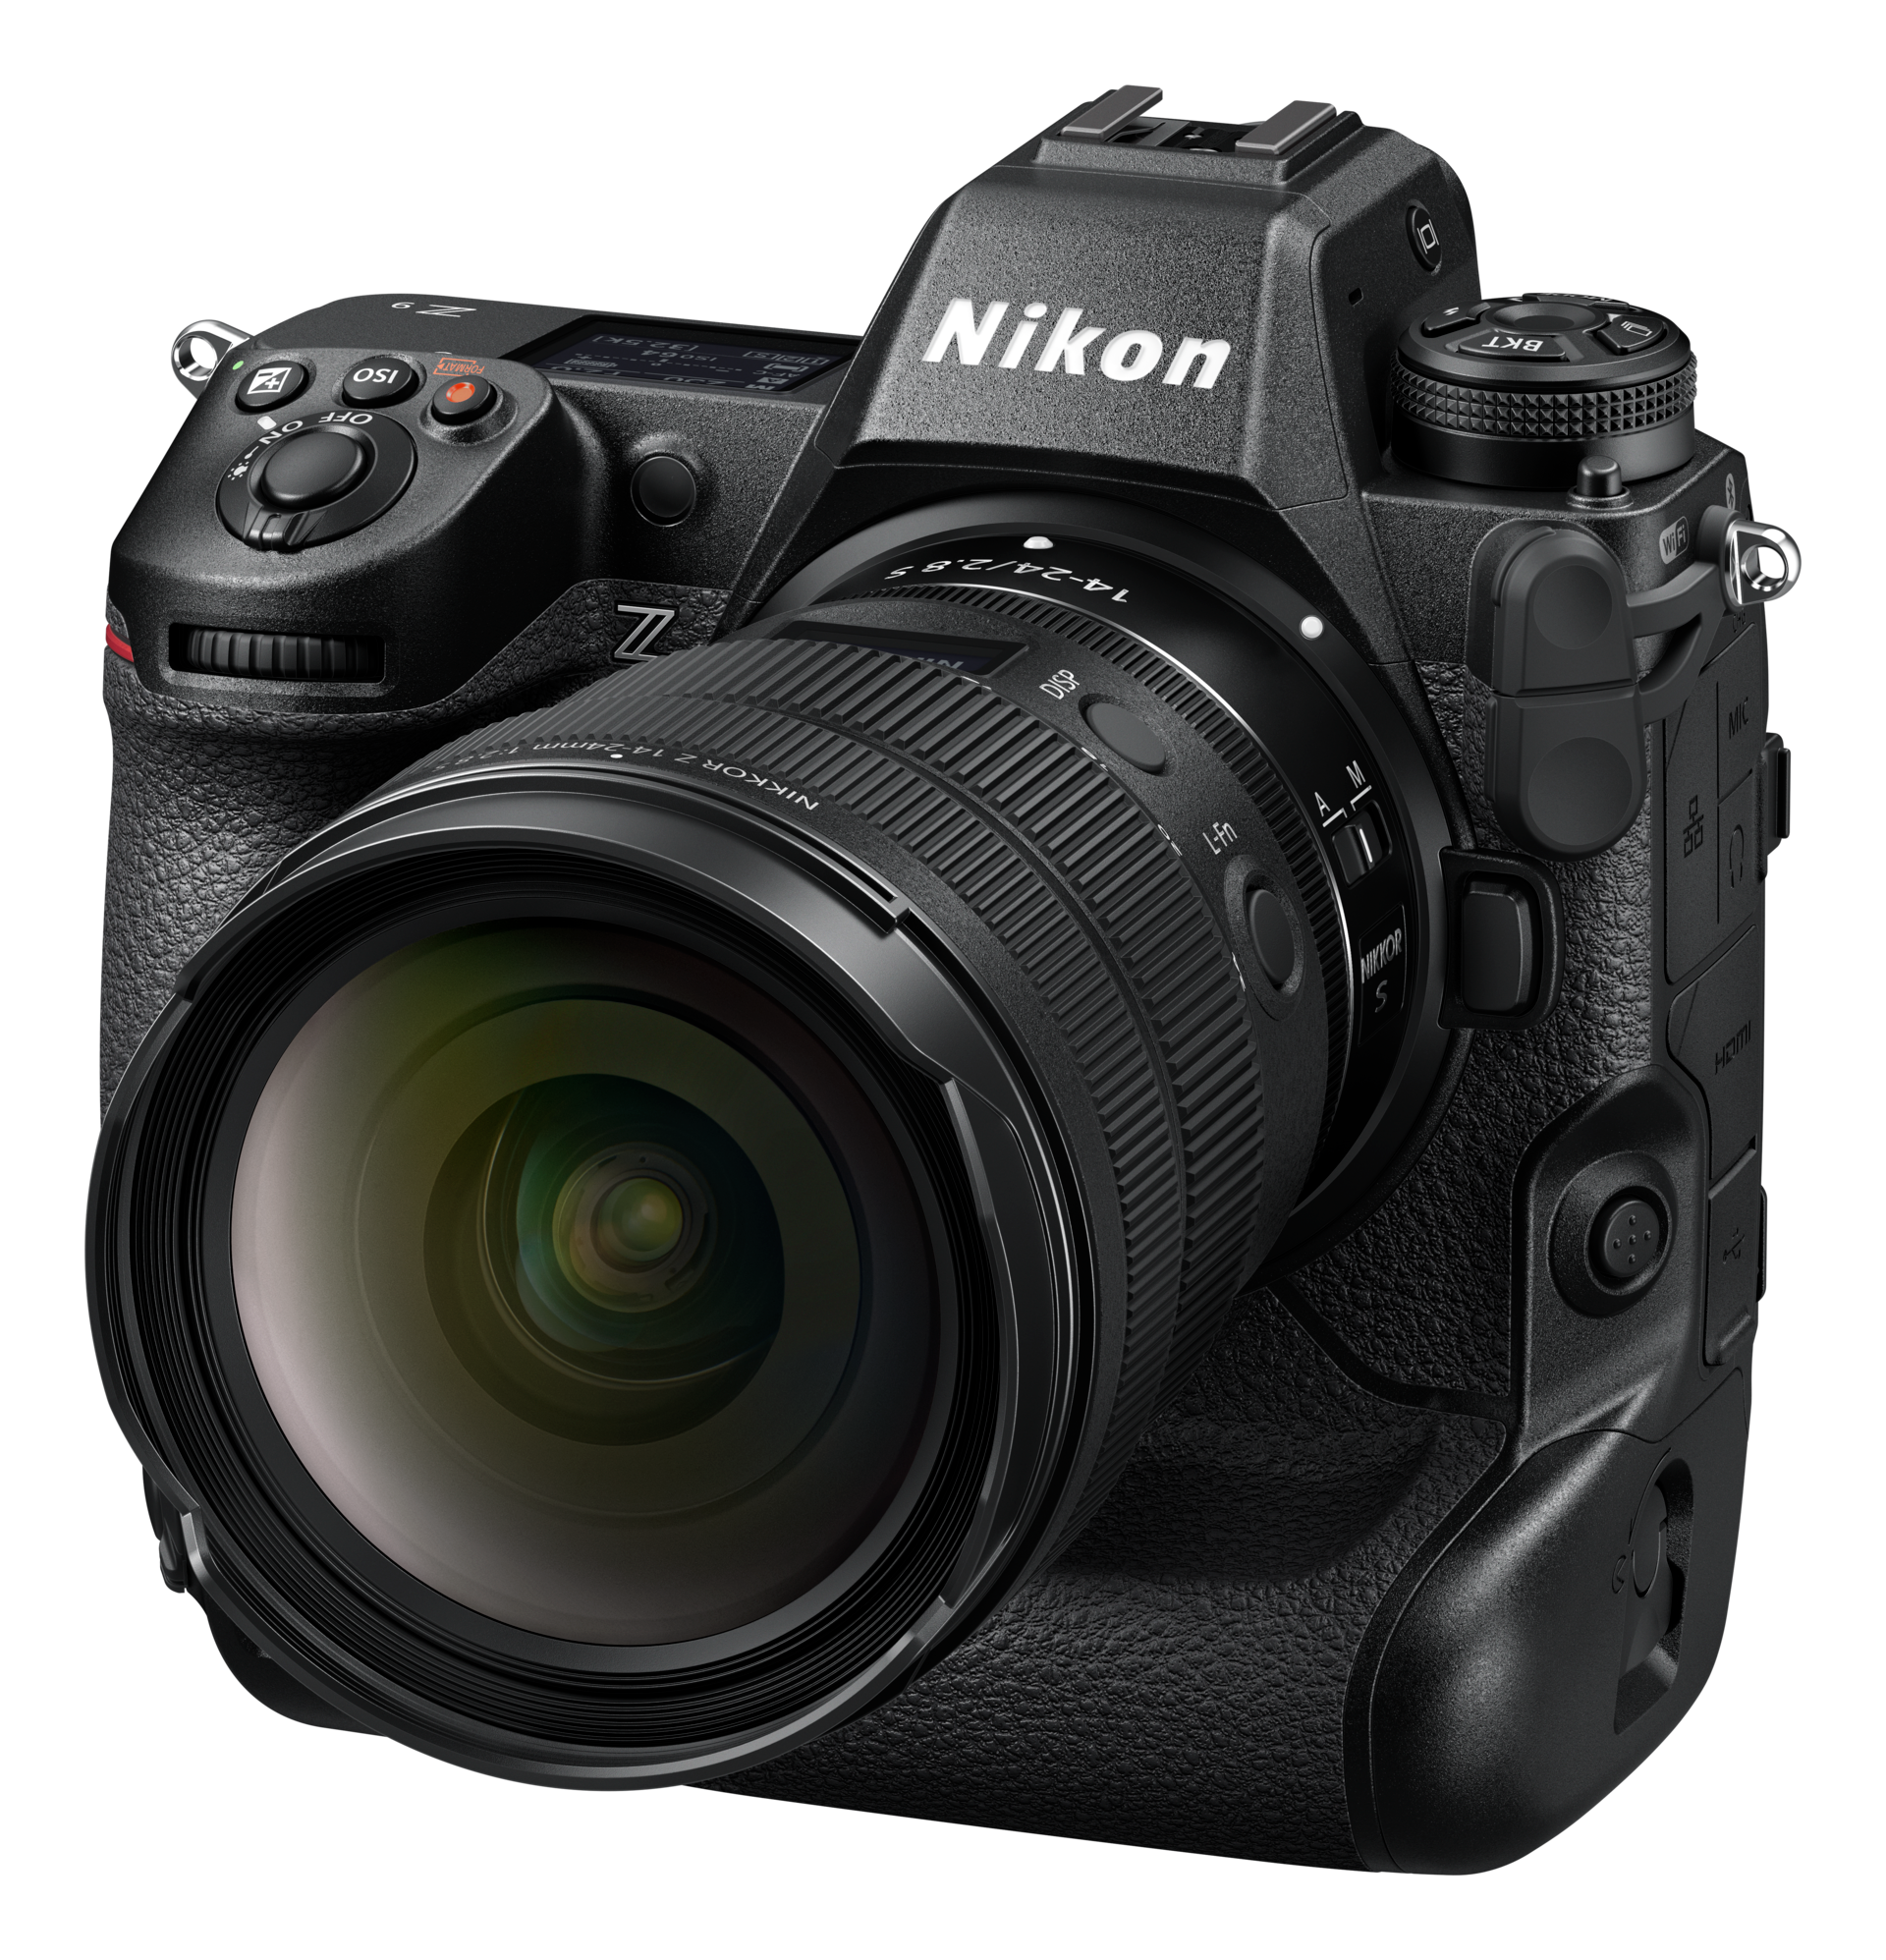 L'amélioration des fonctionnalités de détection d'oiseaux et d'avions dans le firmware v4.10 de la Nikon Z9 : Un pas en avant pour la photographie d'action